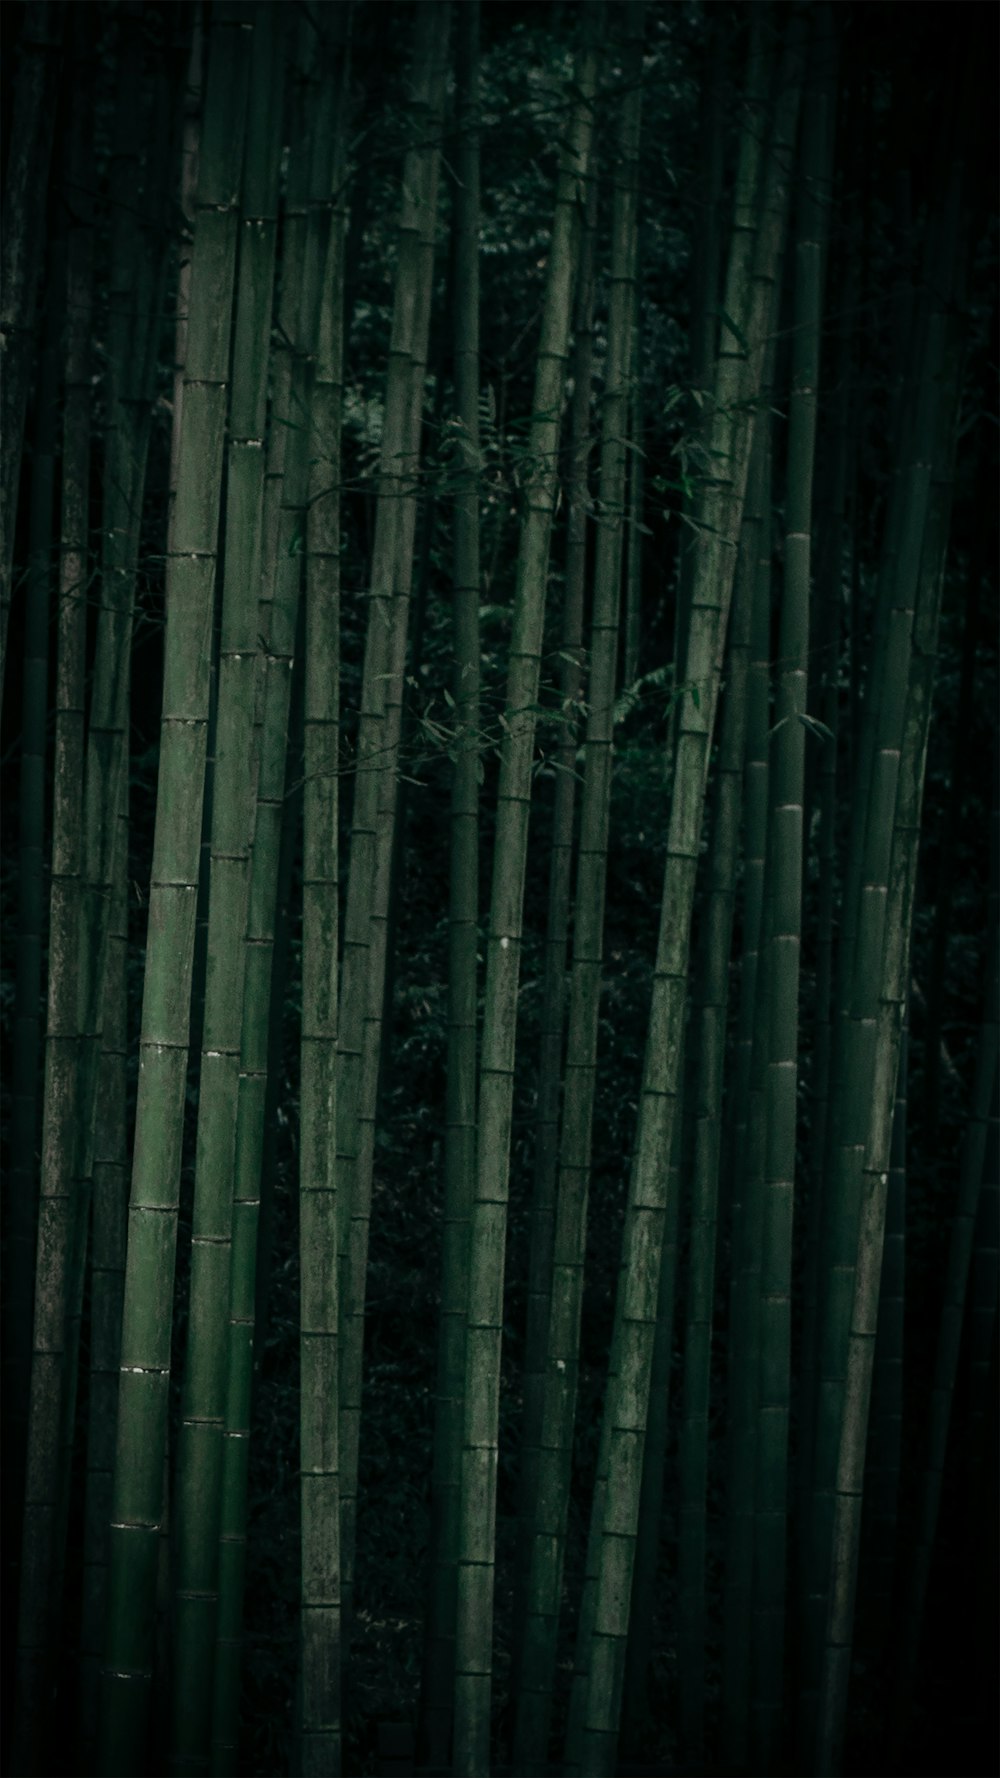 green bamboos